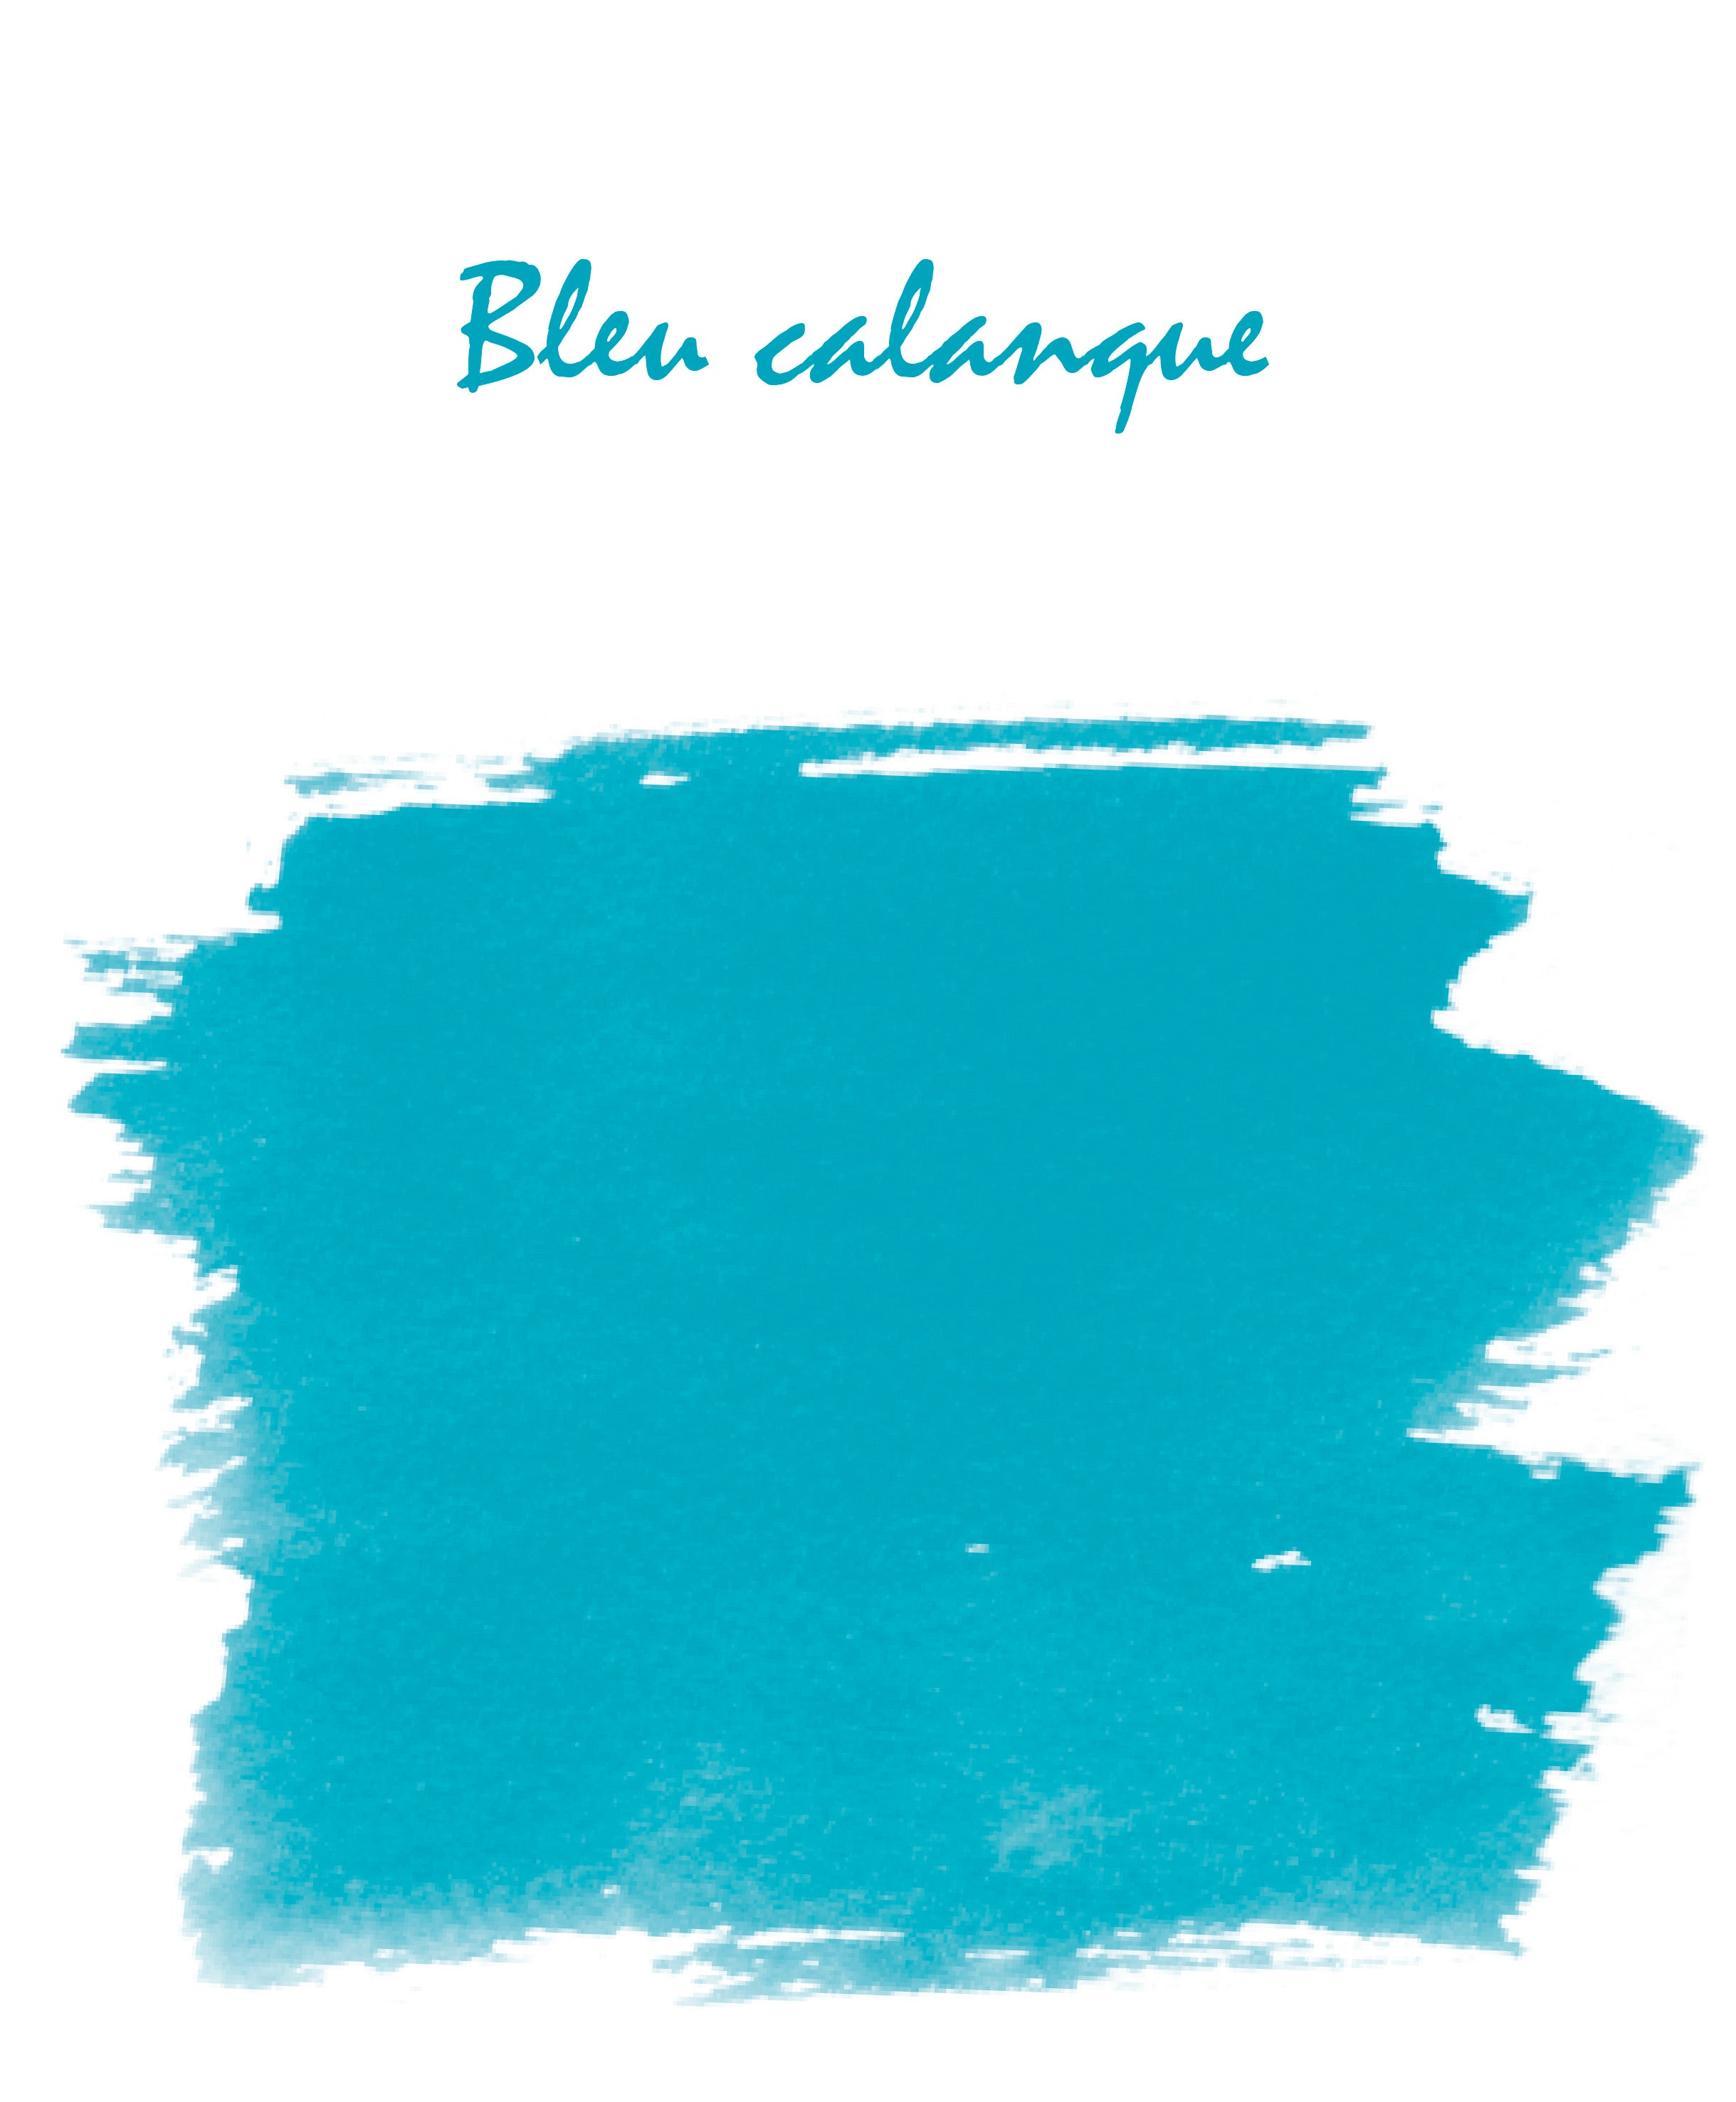 Swatch von Bleu Calanque by Herbin.